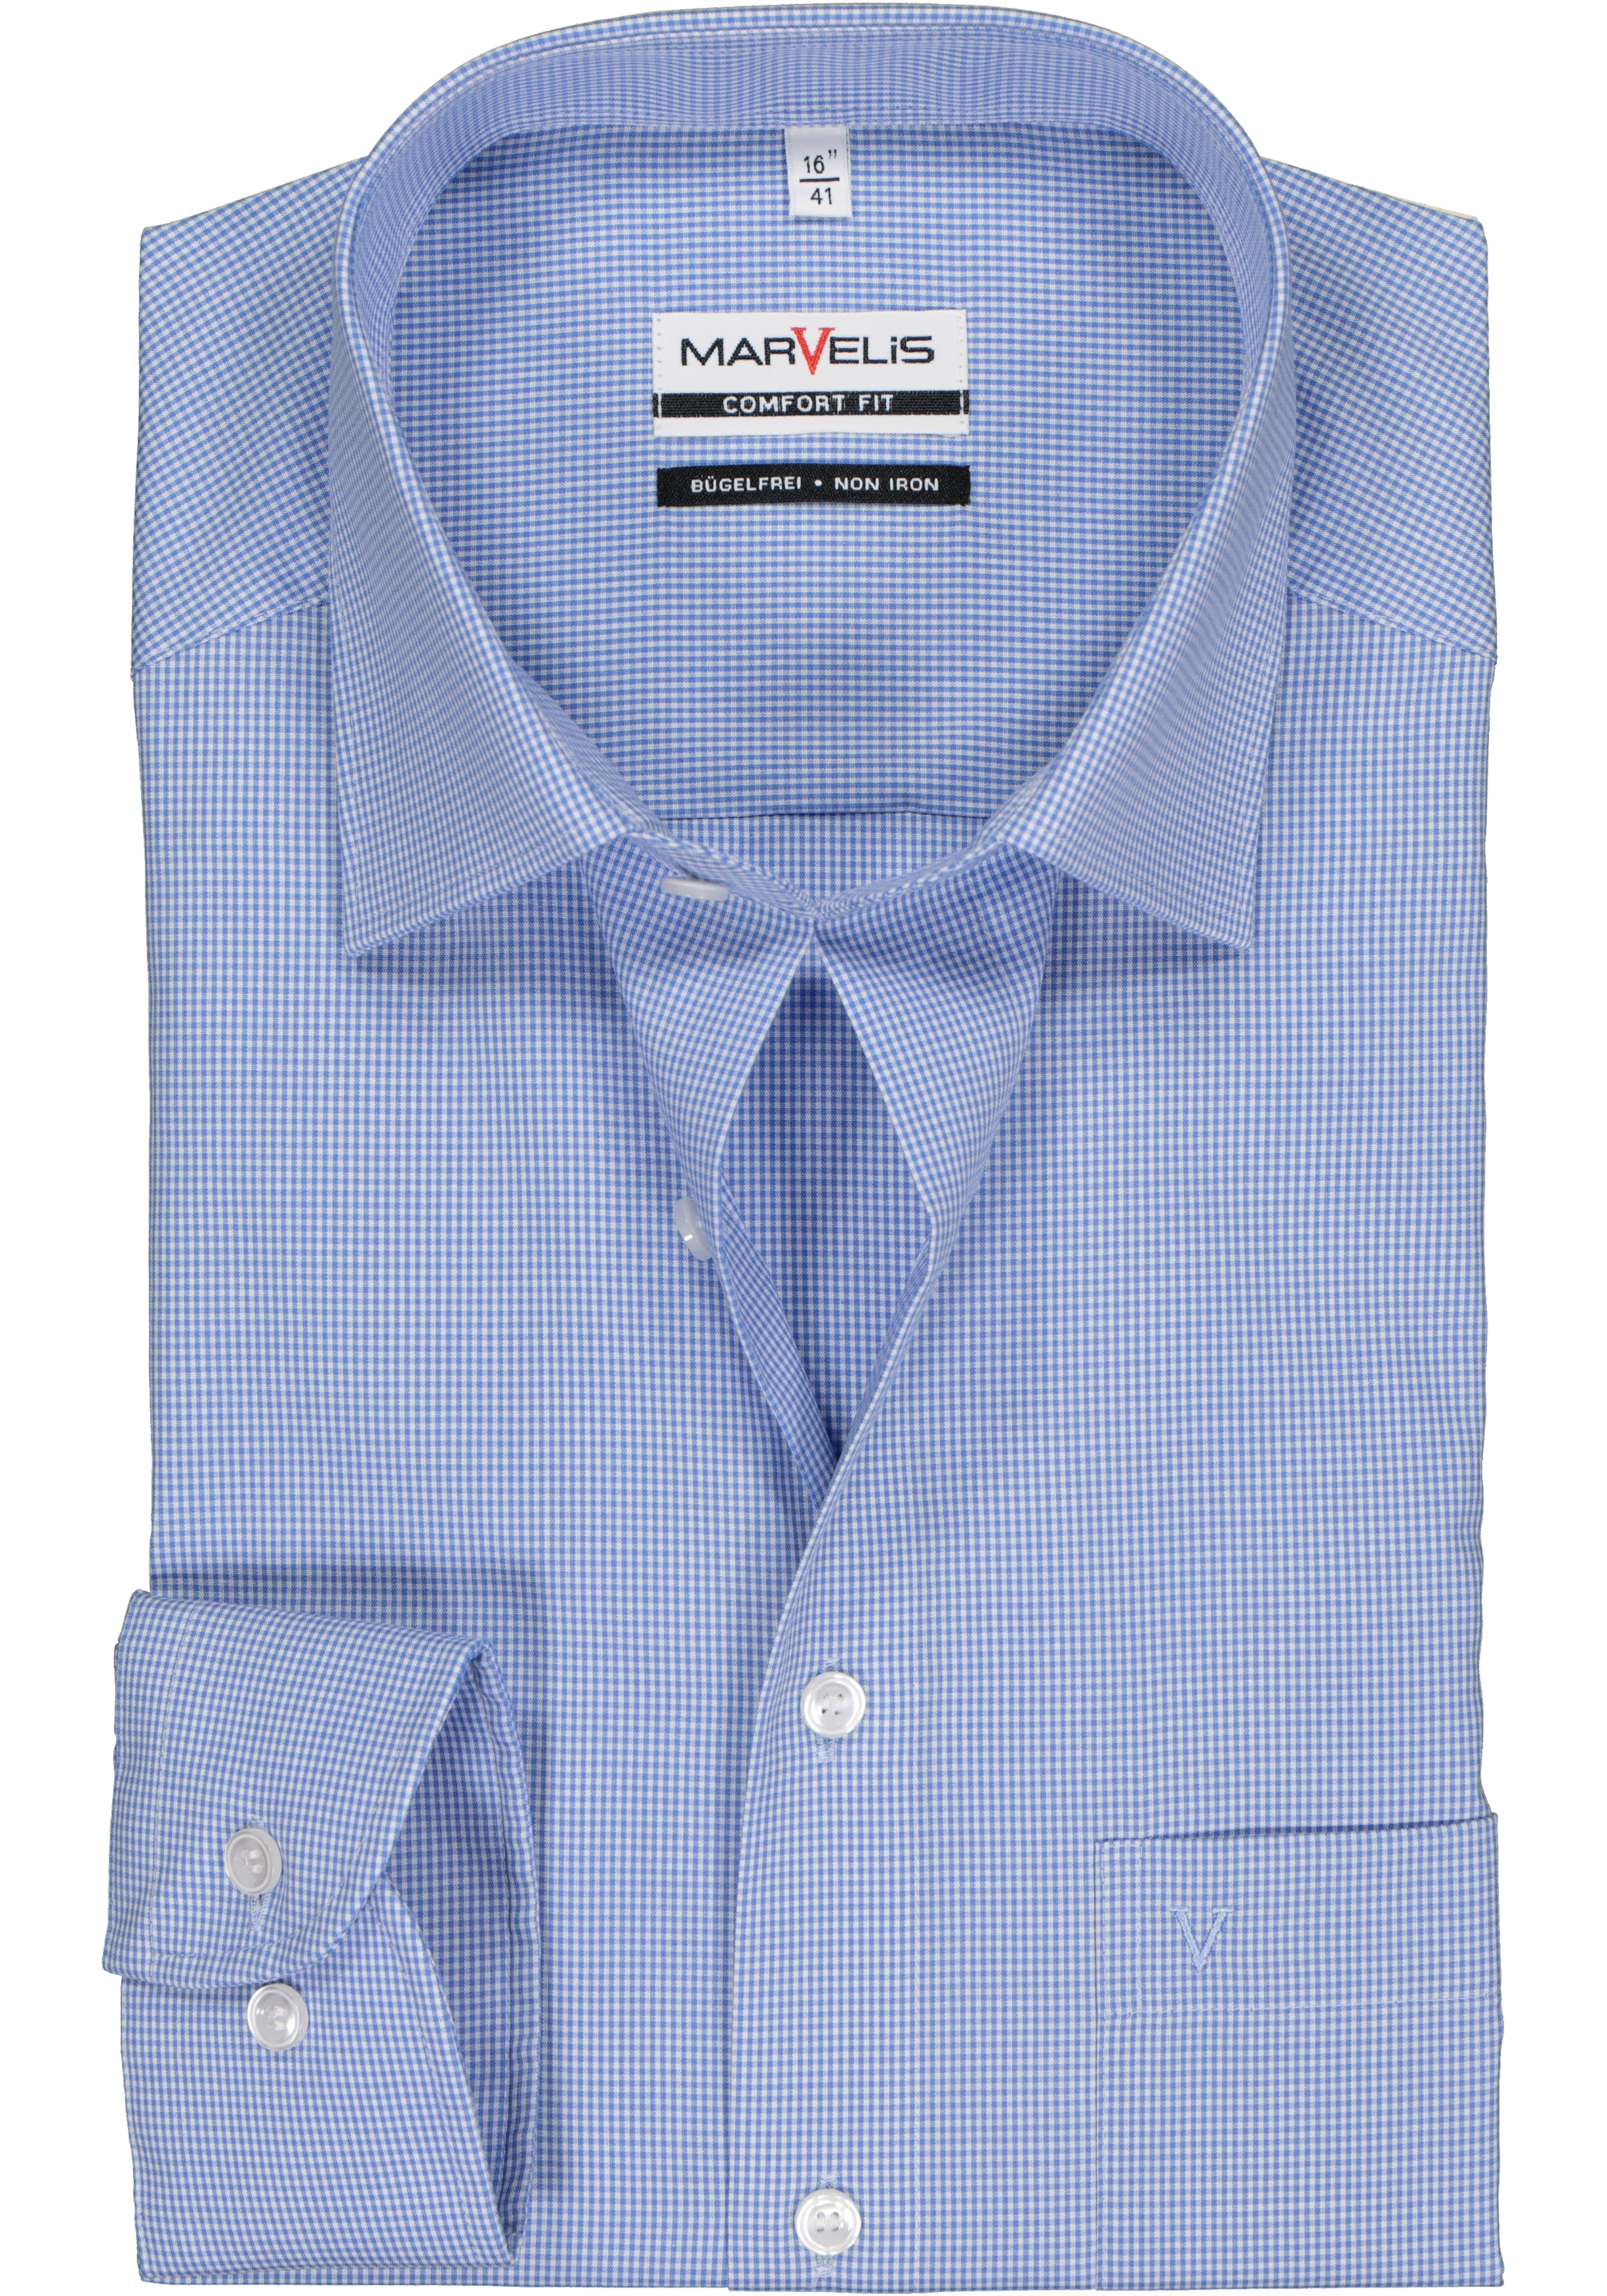 MARVELIS comfort fit overhemd, blauw met wit geruit   